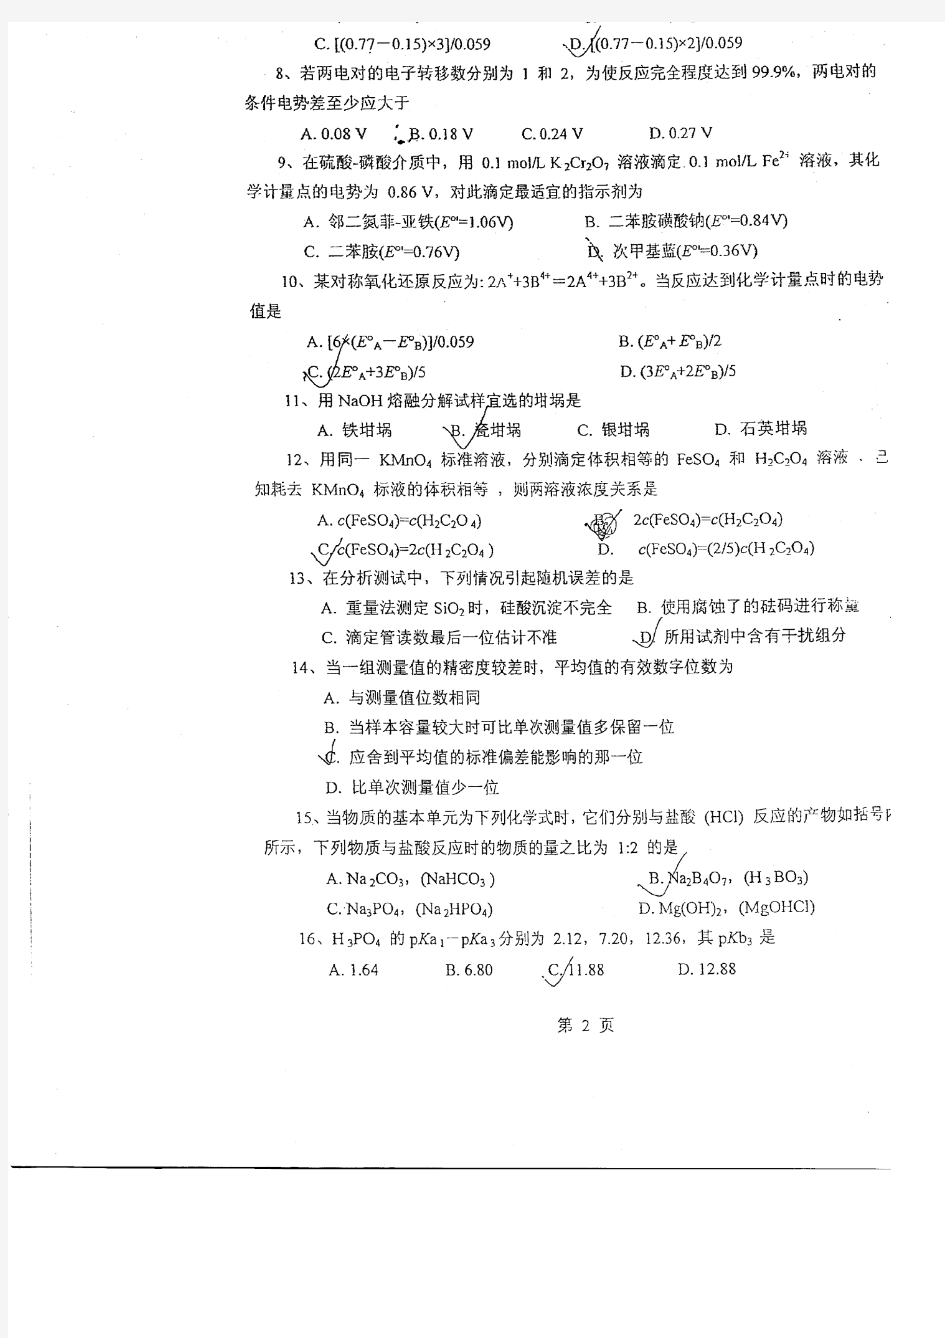 贵州大学2007农药学专业分析化学考研试题